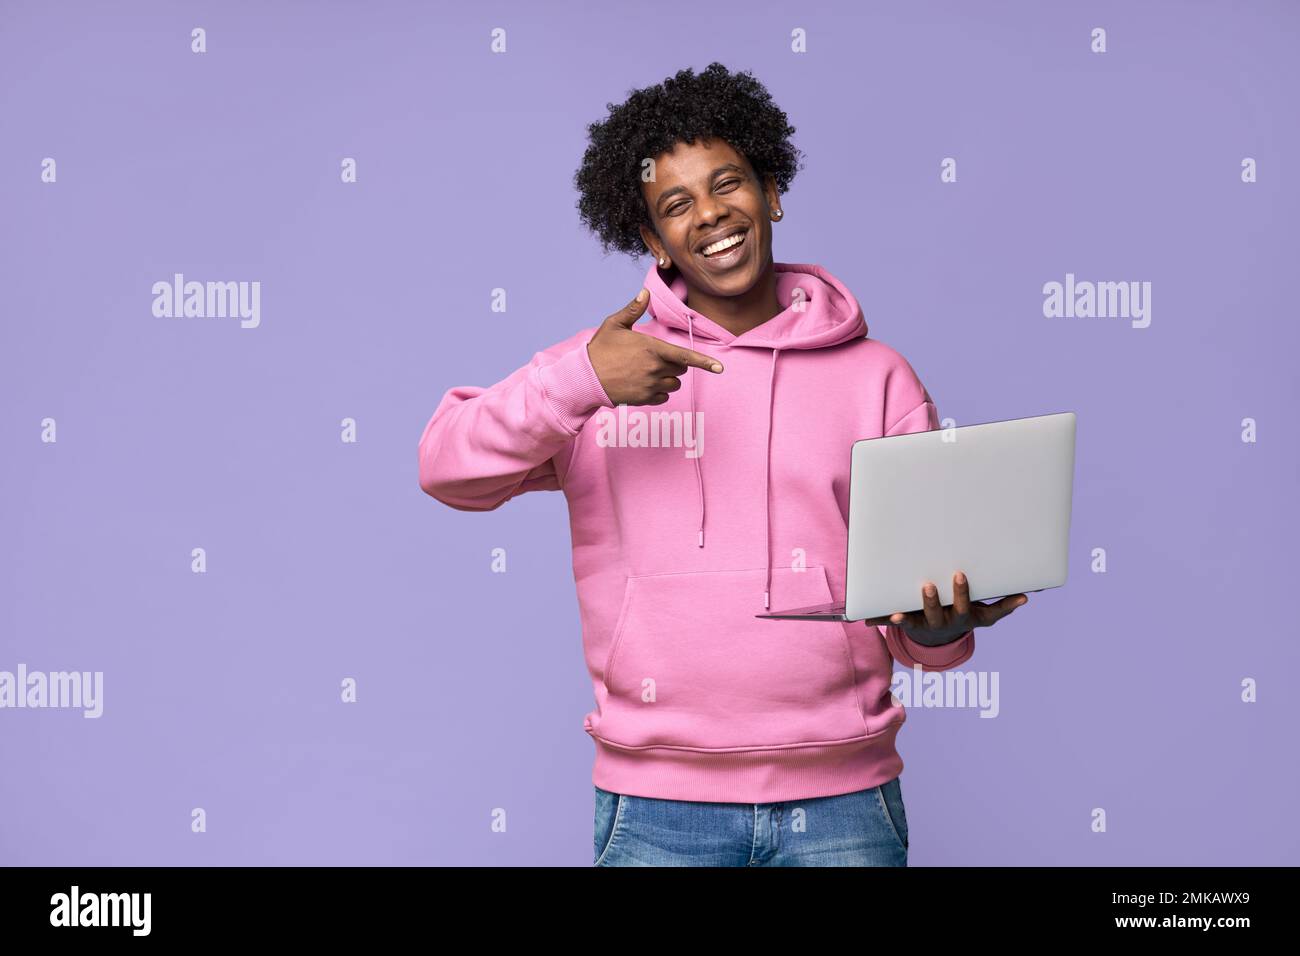 Un jeune étudiant africain heureux tenant le doigt sur un ordinateur portable isolé sur le violet. Banque D'Images